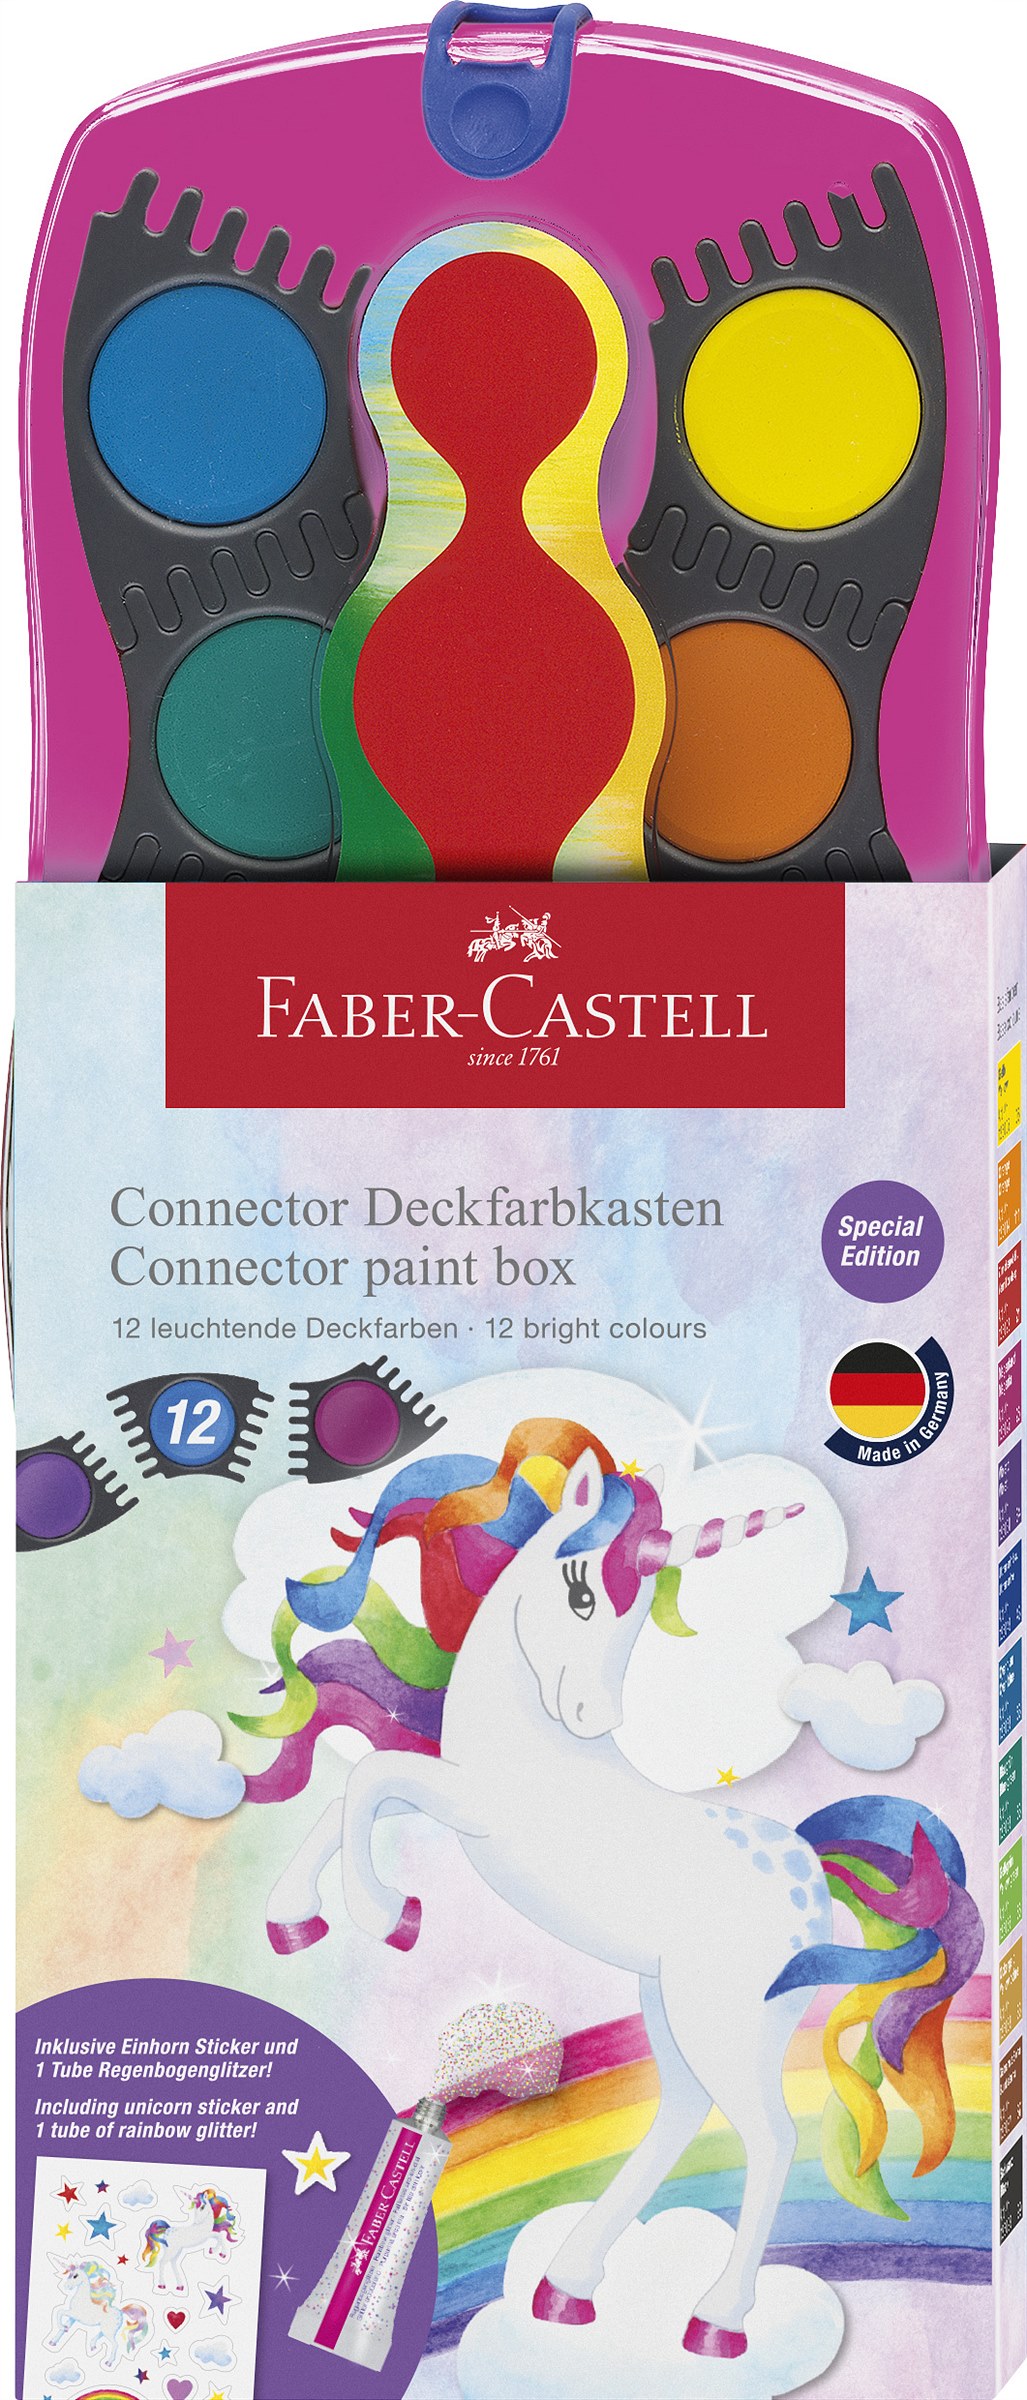 Faber-Castell_Connector paint box 12 colours unicorn__EUR 13,00